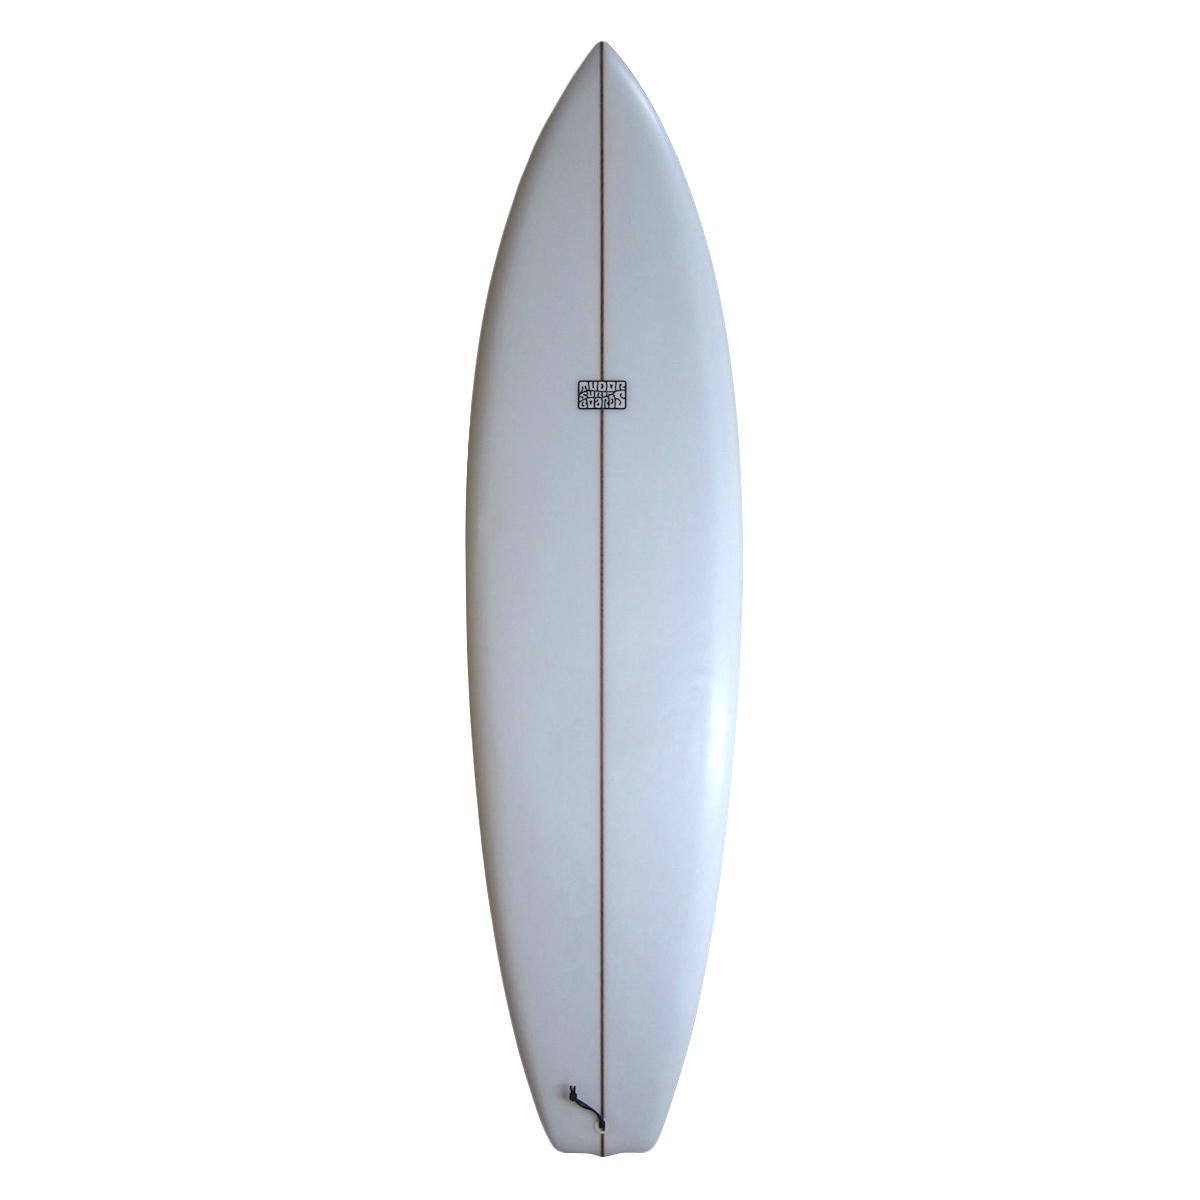 TUDOR SURFBOARDS / BONZER